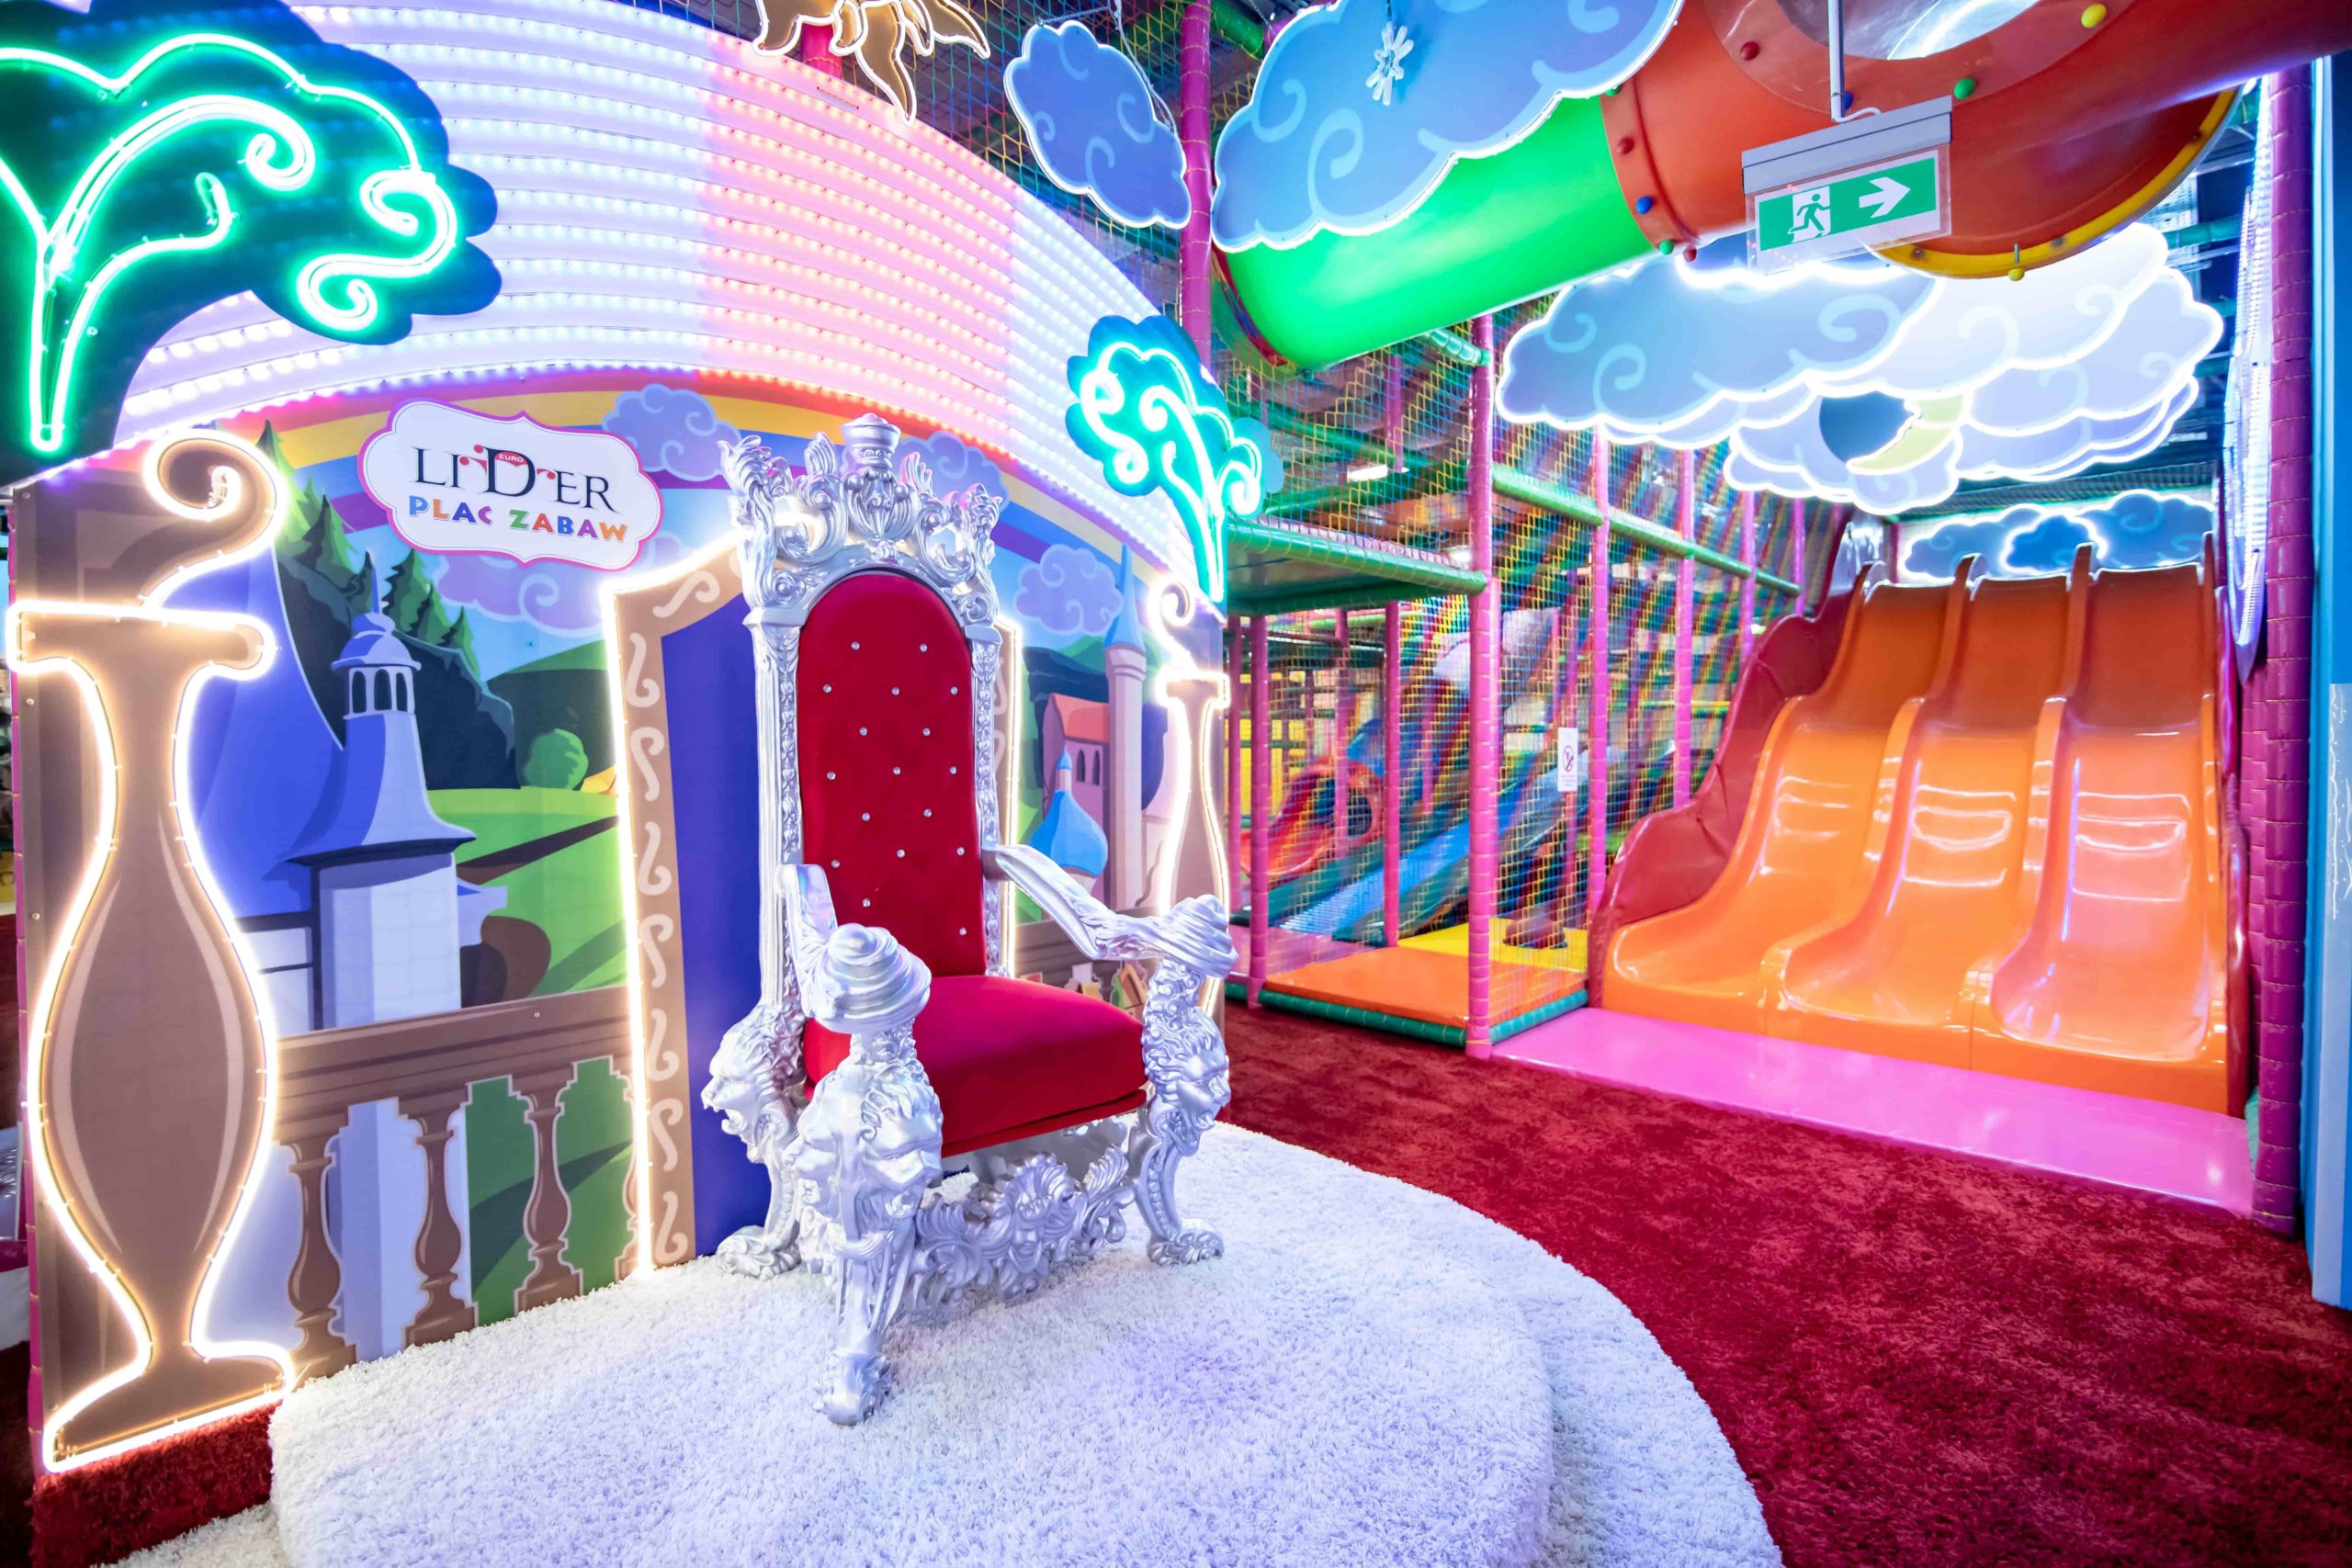 Bajkowy plac zabaw Euro Lider - nowe miejsce dla dzieci otwarte w Atrium Reduta